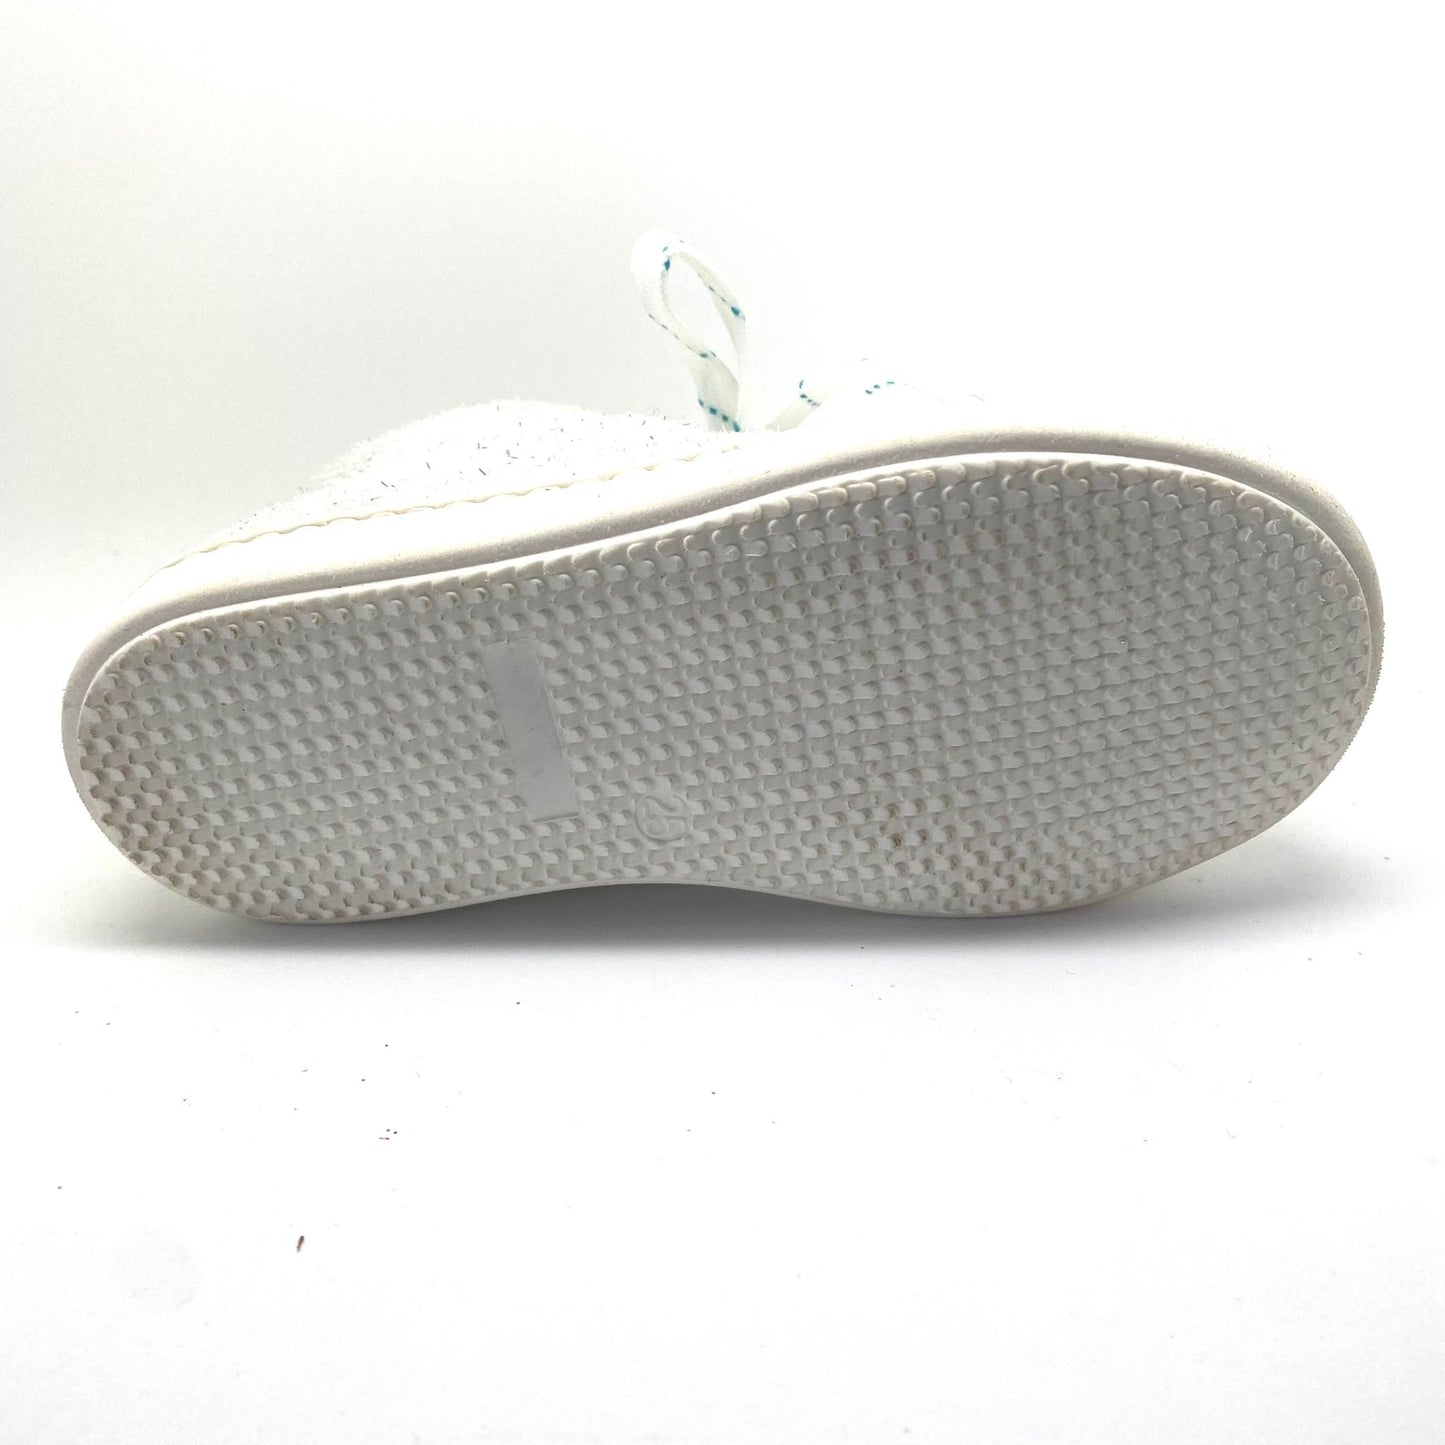 Rondinella sneaker wit glitter met rits